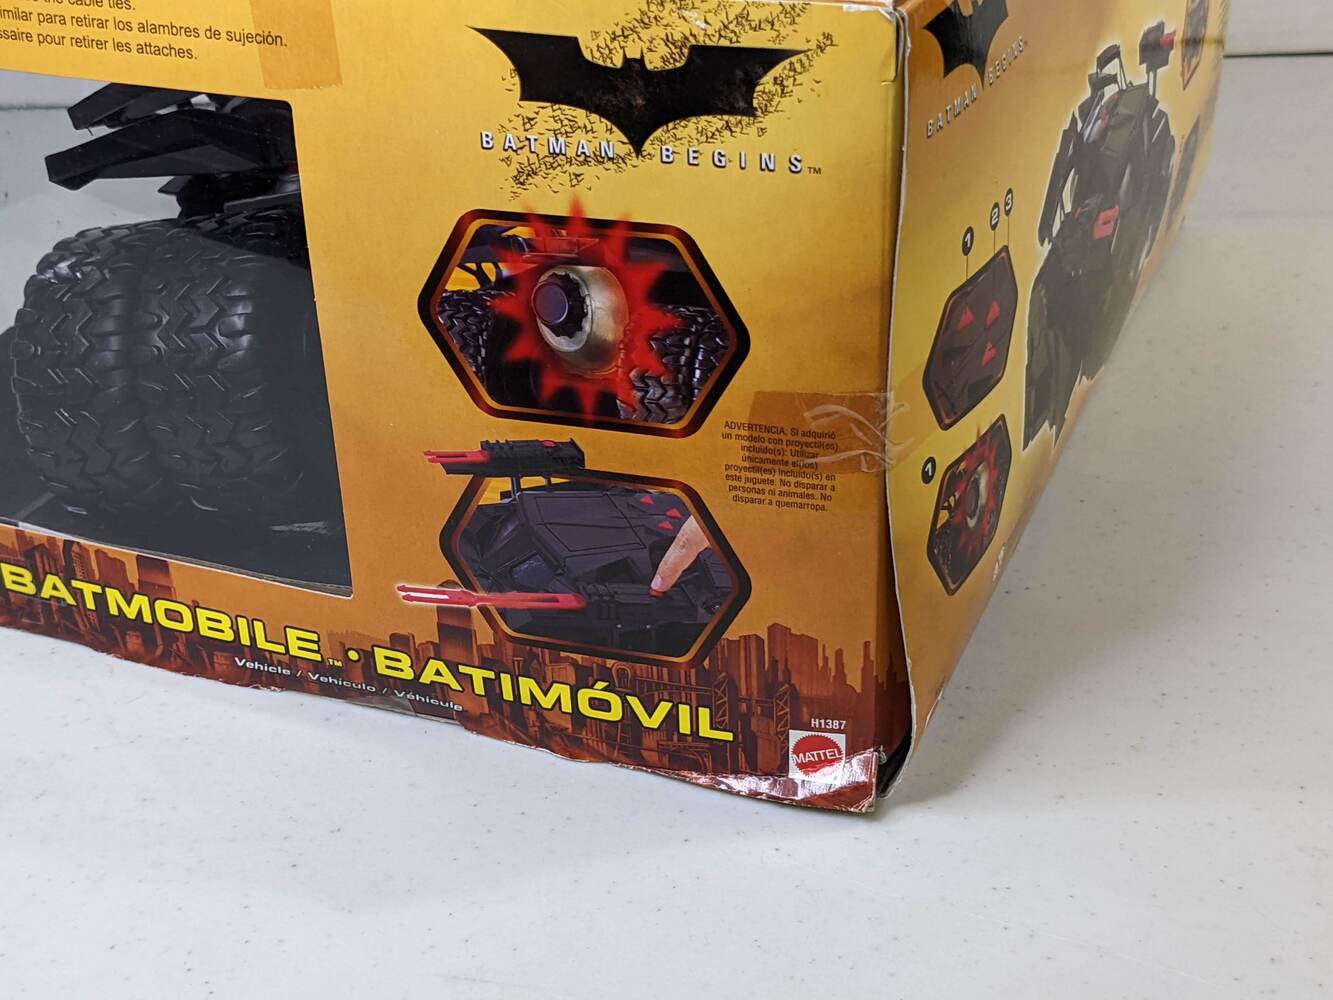 Batman Begins - Batmobile Tumbler électronique (loose) - Mattel 2005